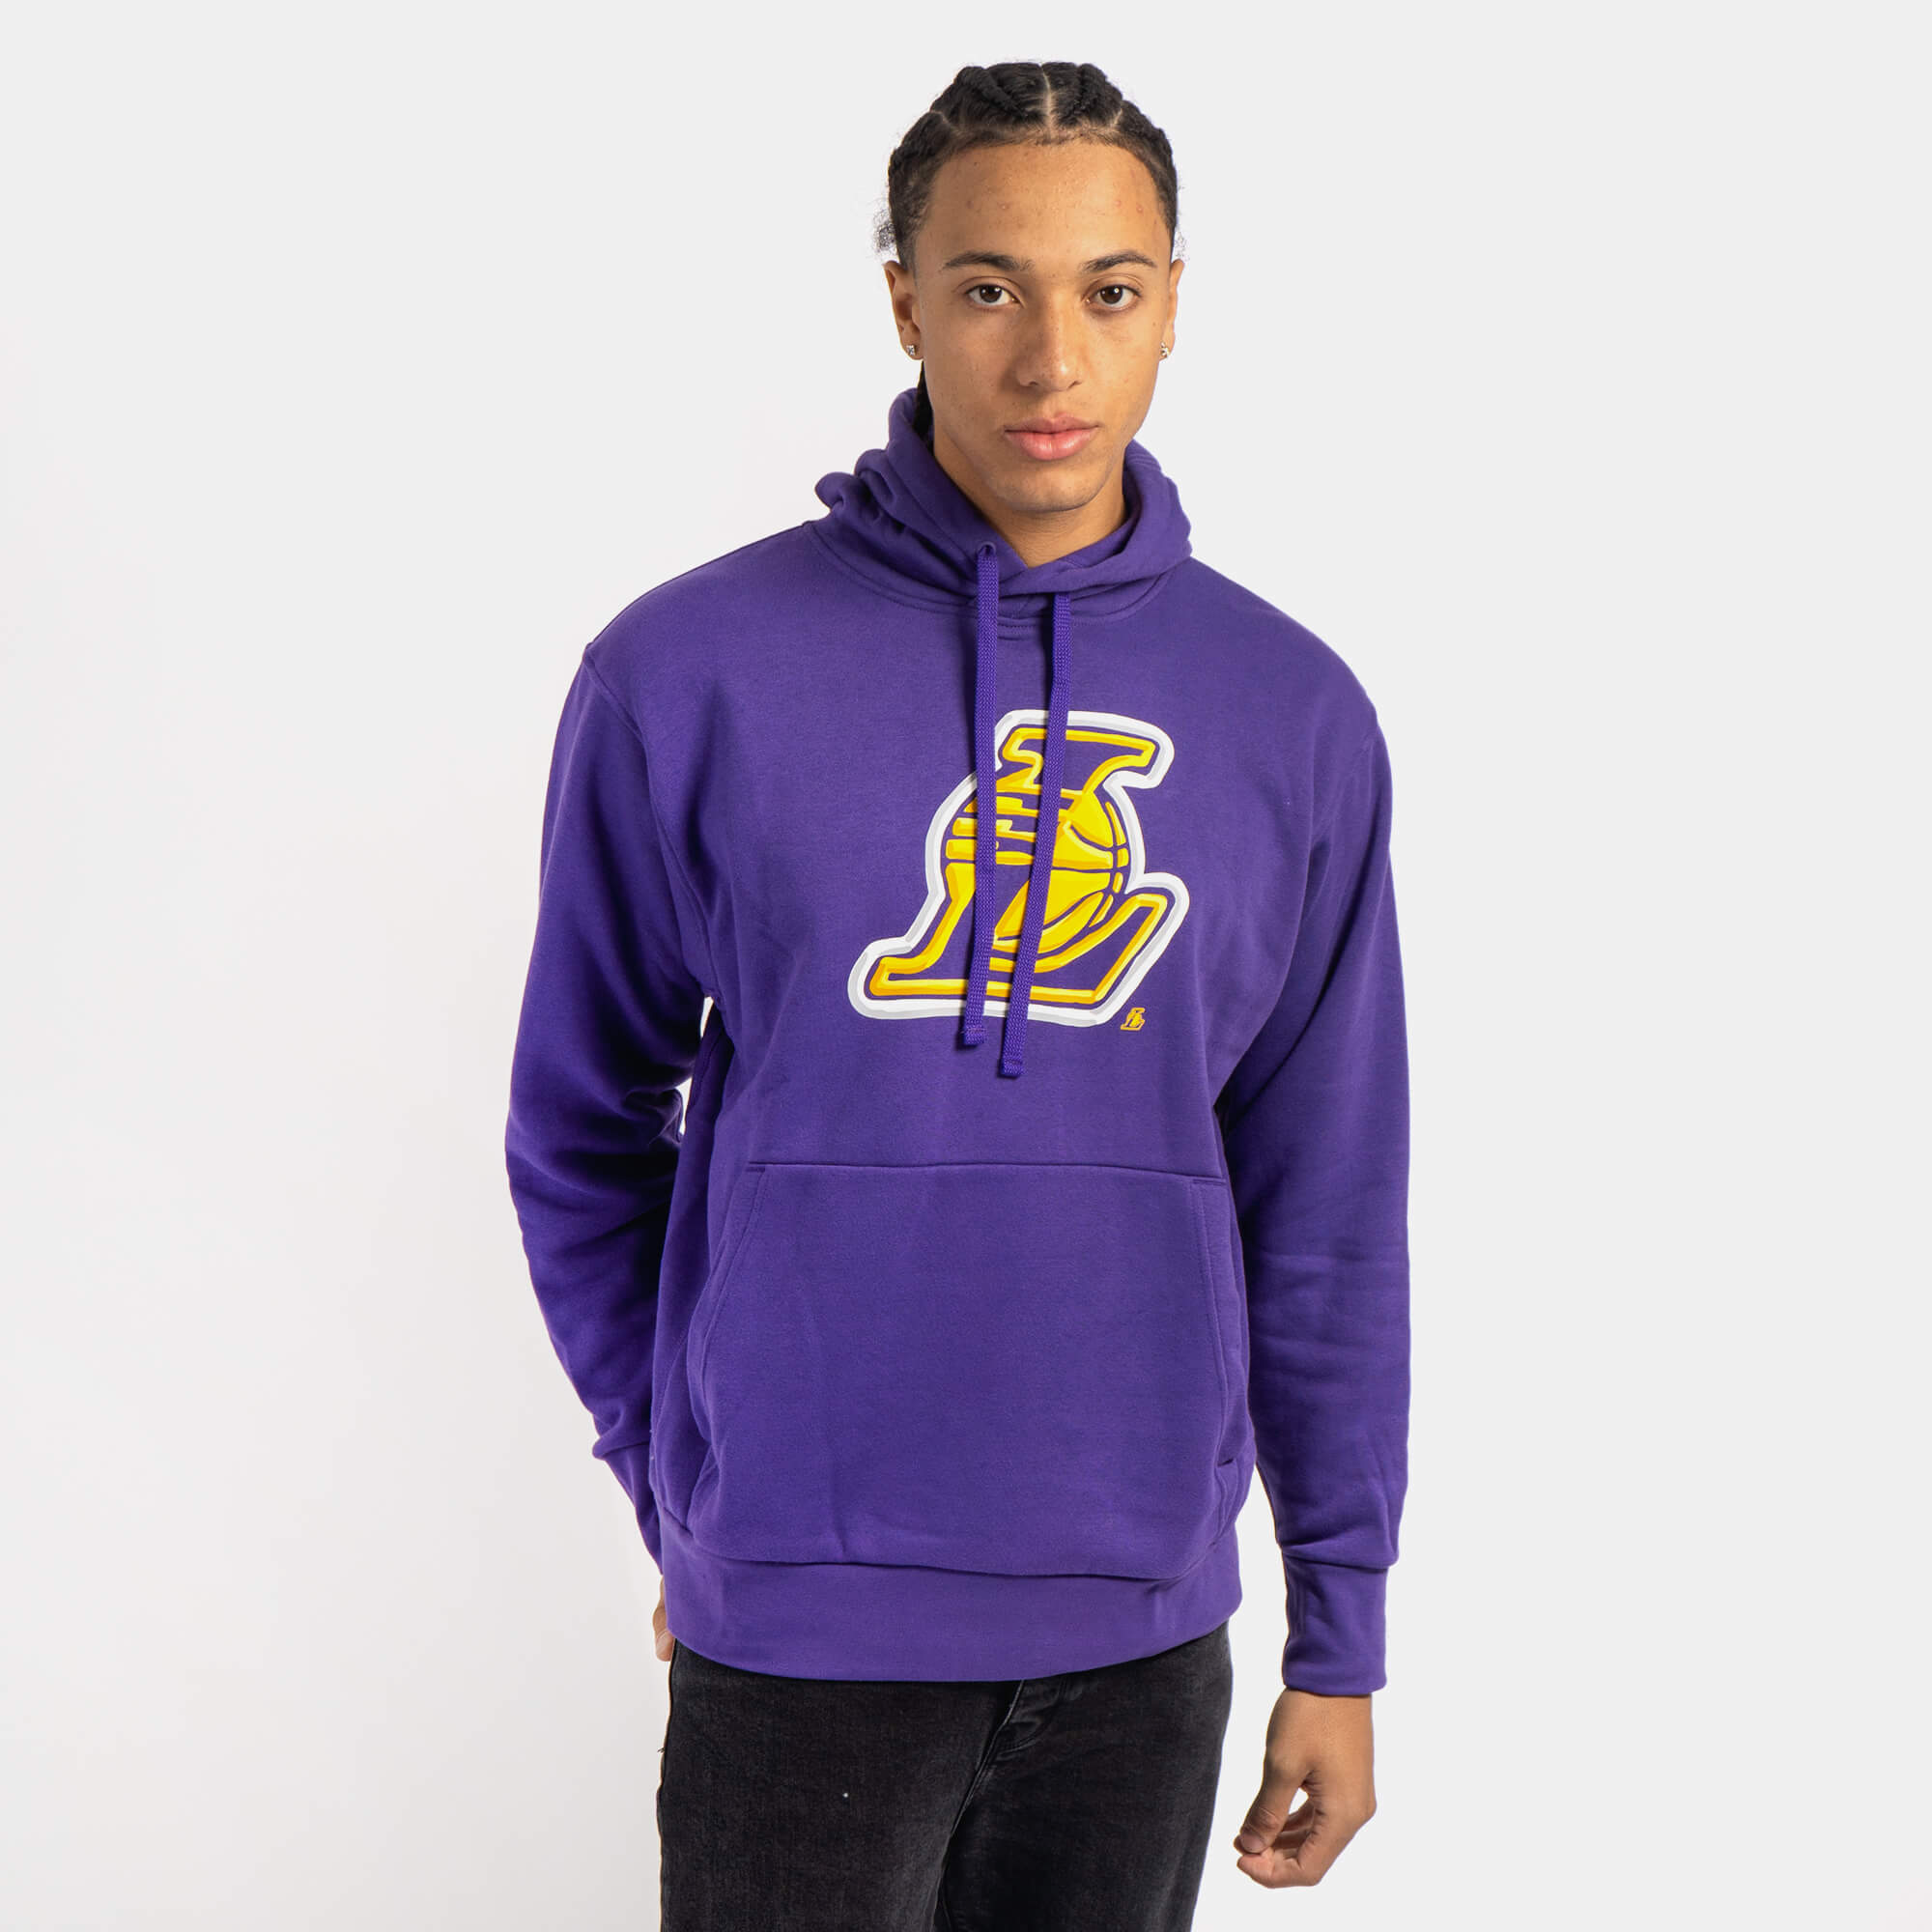 Los Angeles Lakers Nike Sweatshirts, Lakers Hoodies, Fleece